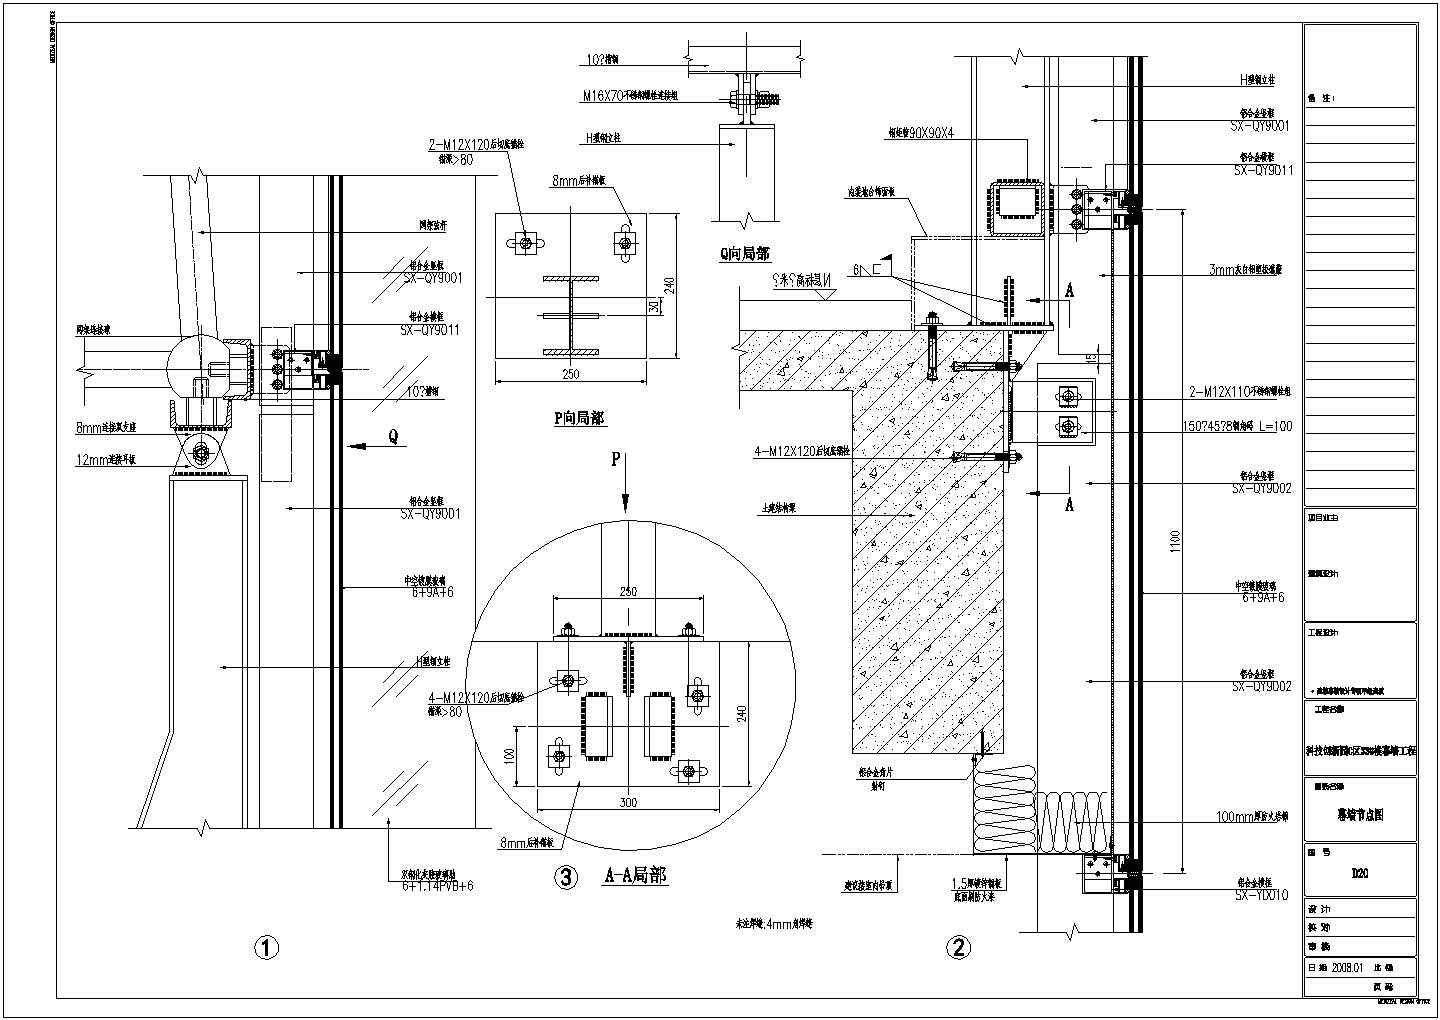 【成都】四层科技创业园综合楼幕墙设计施工图